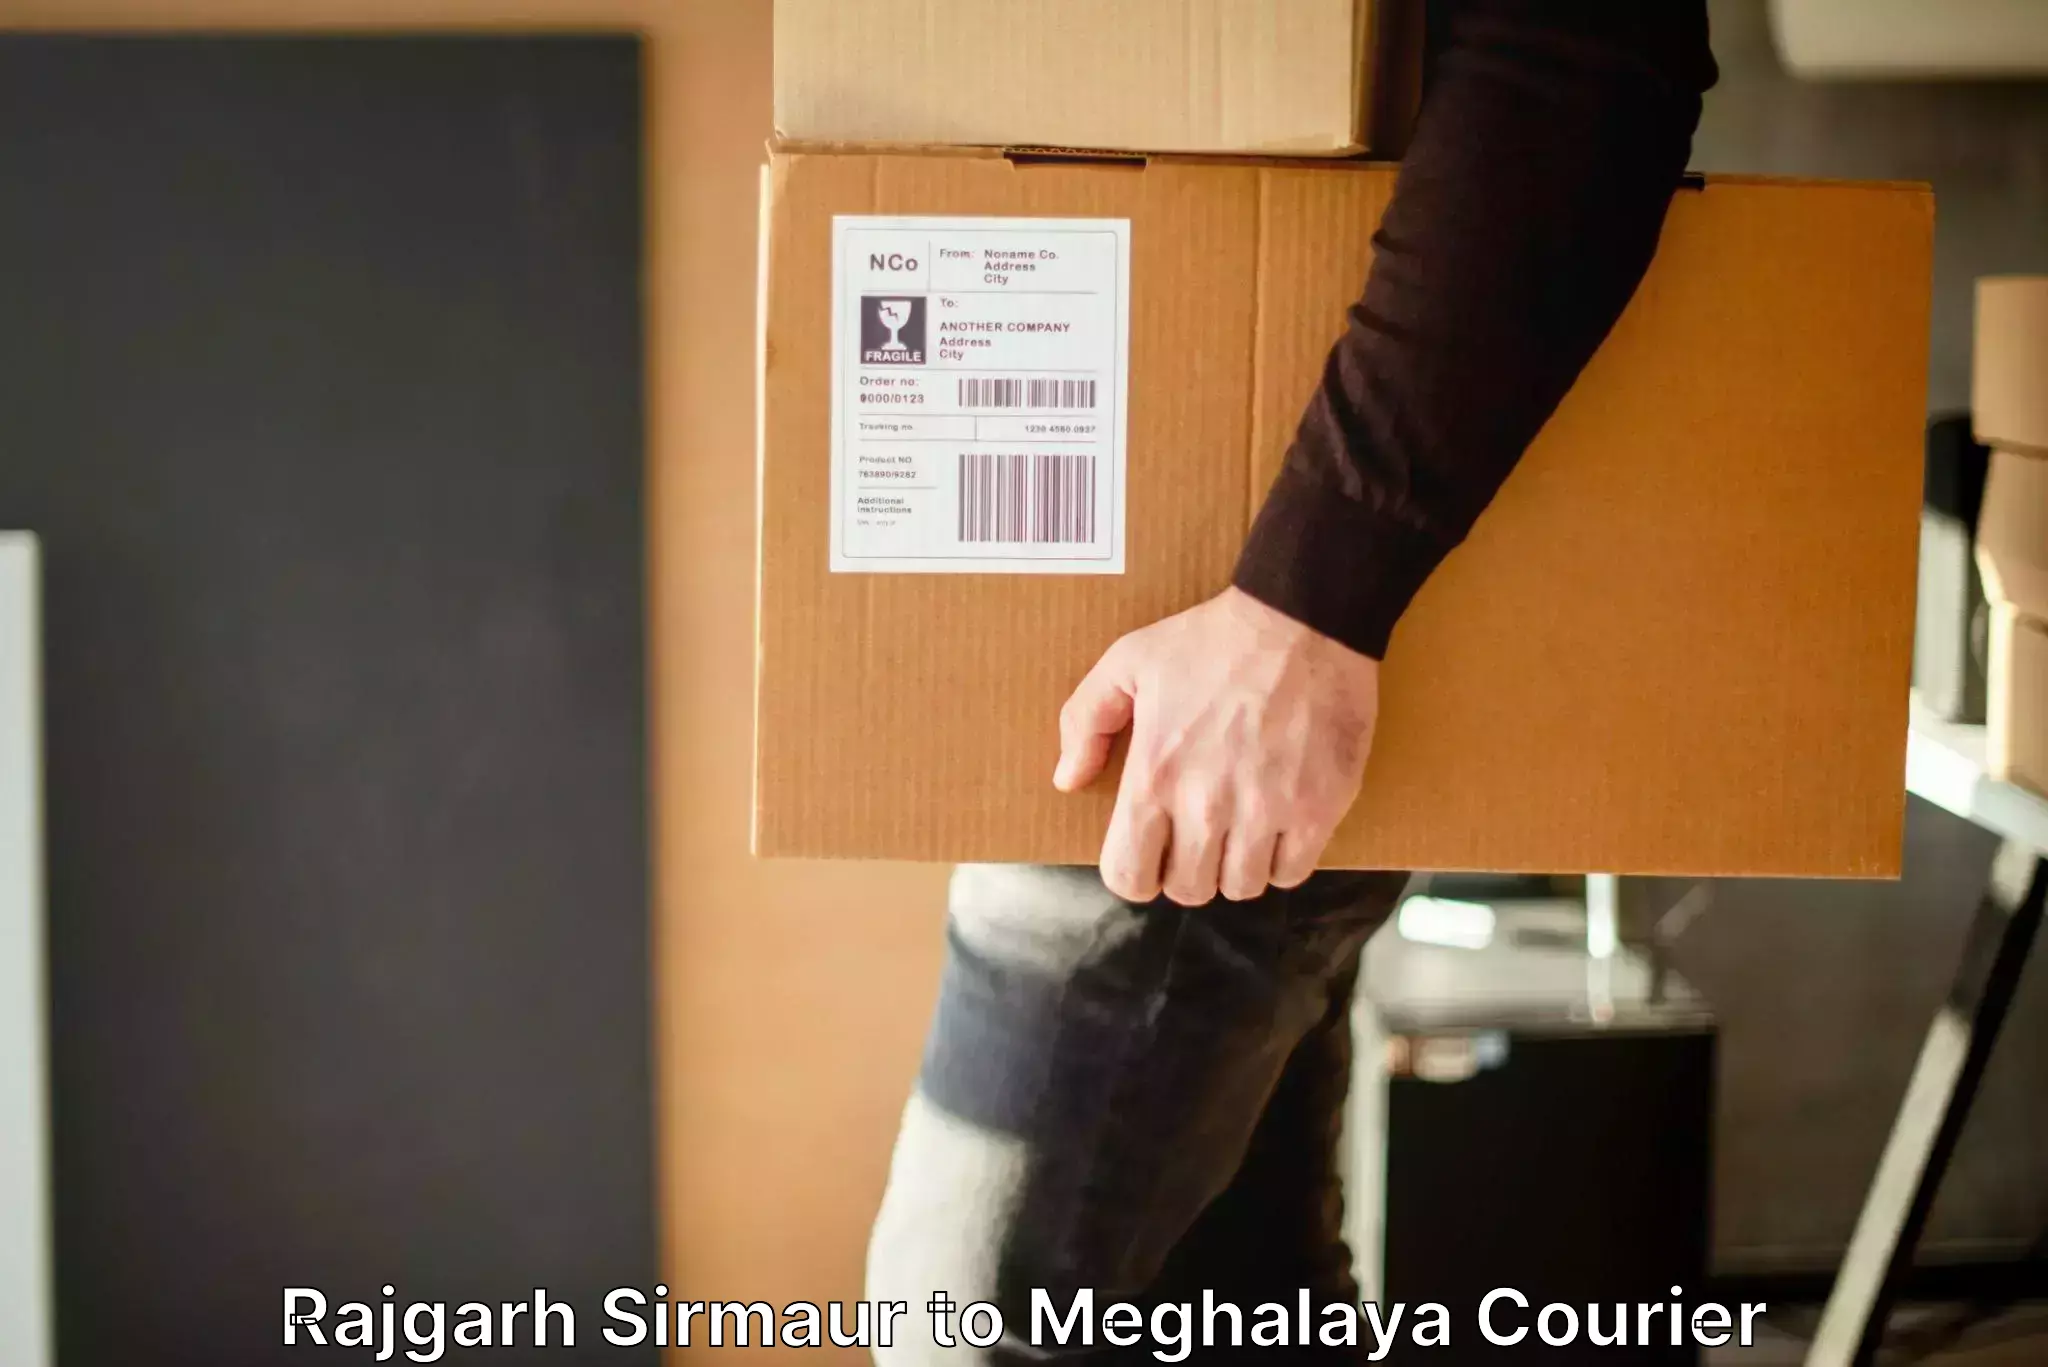 Baggage shipping experts Rajgarh Sirmaur to Cherrapunji